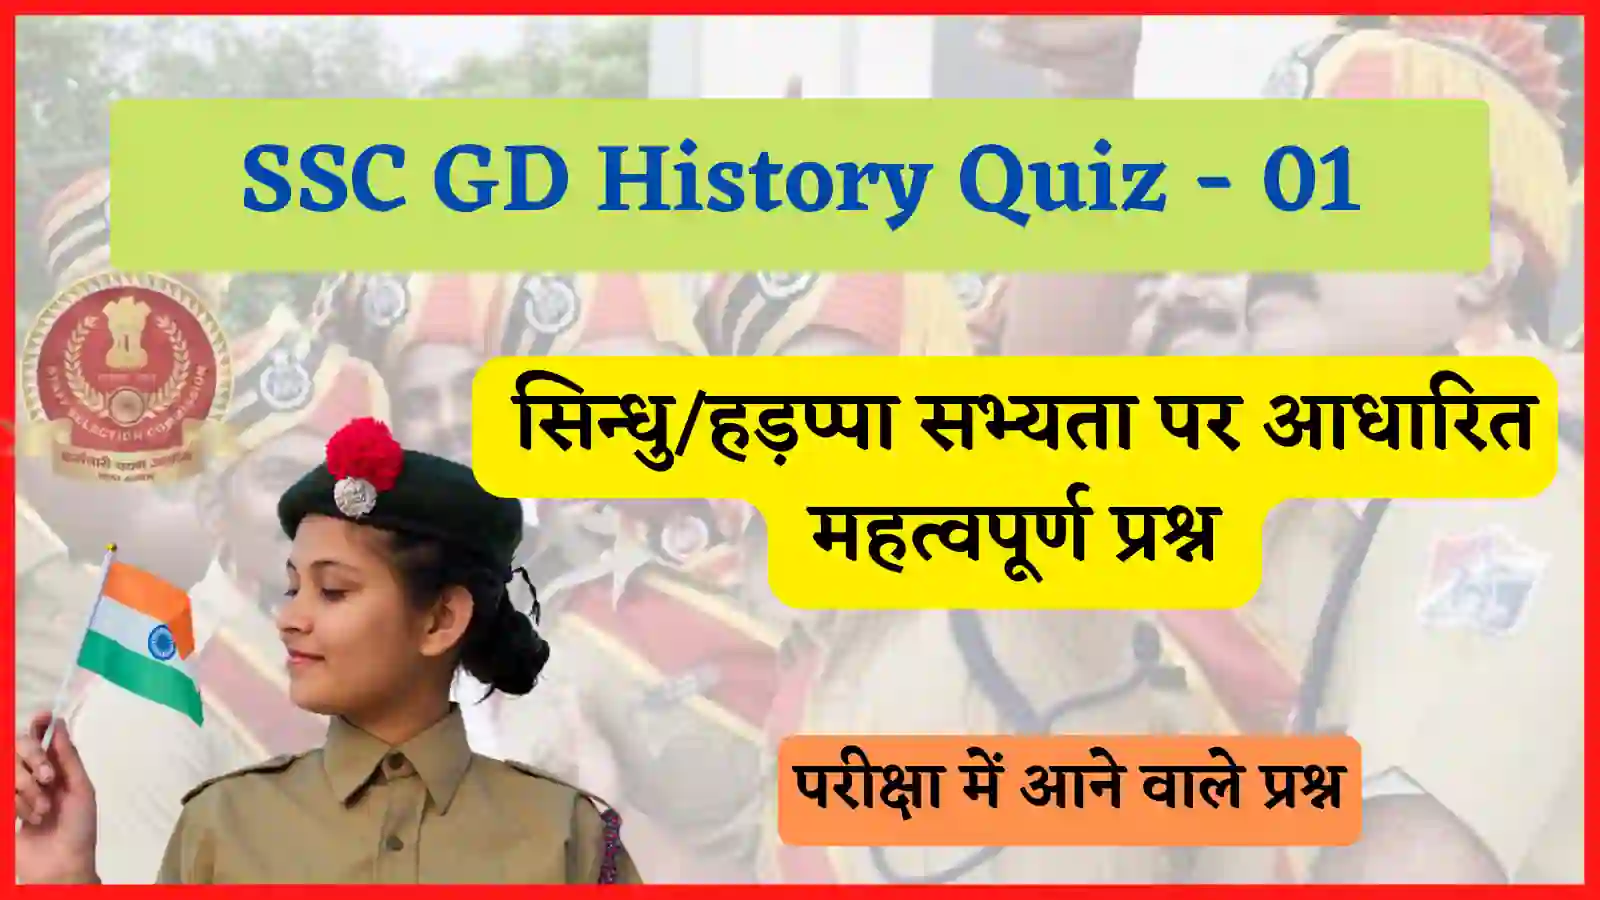 SC GD History sindhu ghati sabhyta Quiz - 01